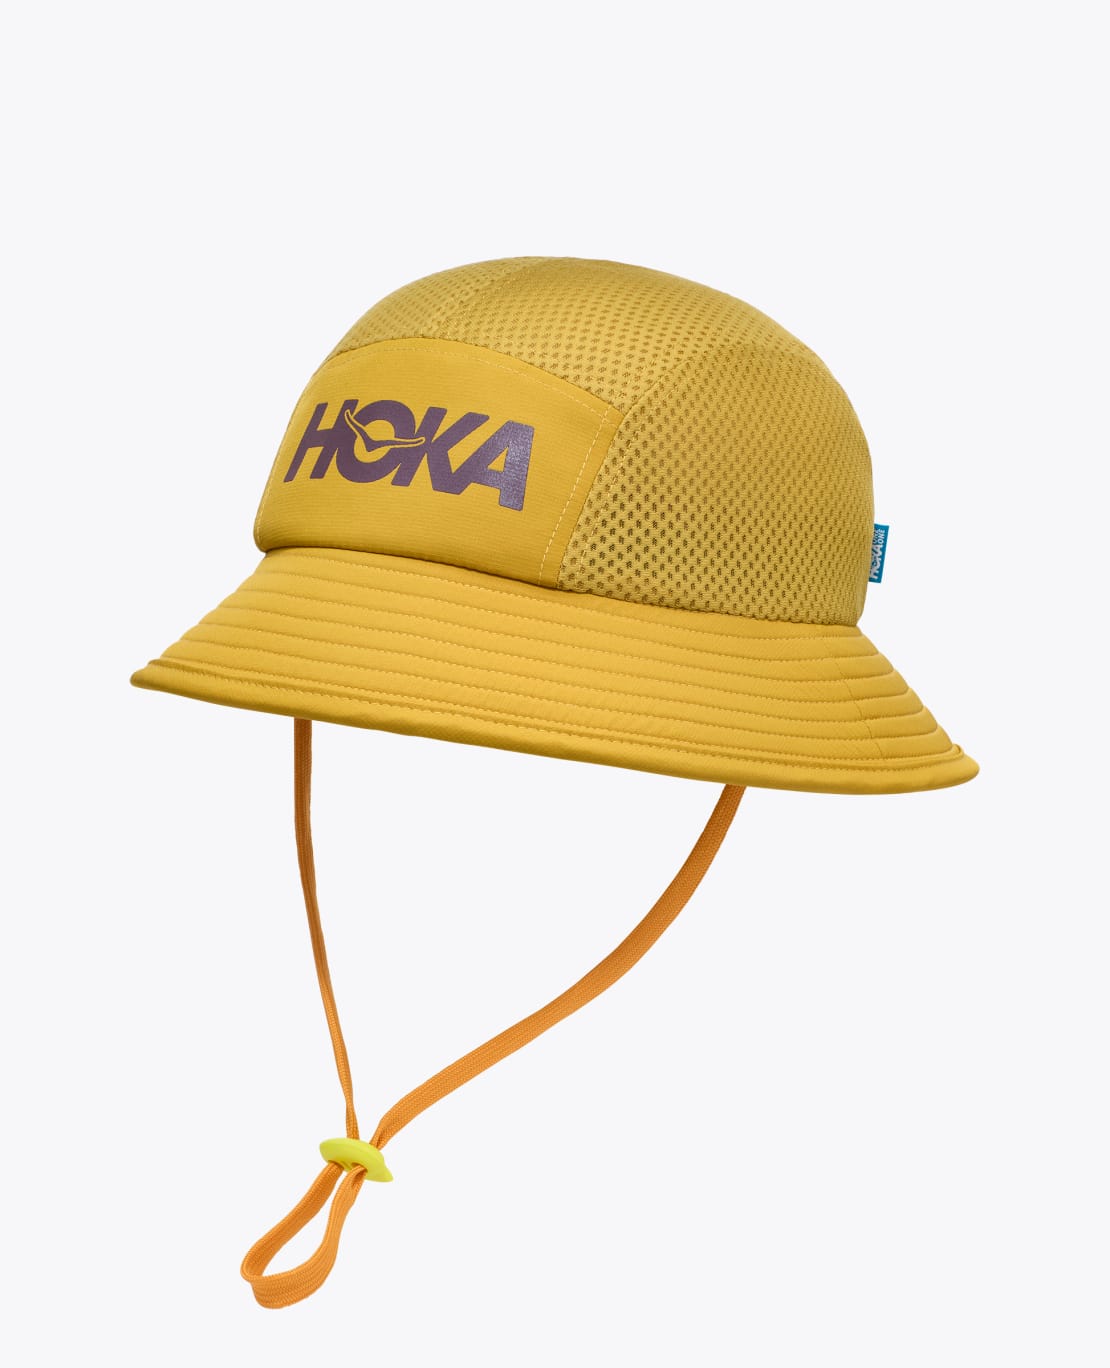 Adjustable Bucket Adventure Hat